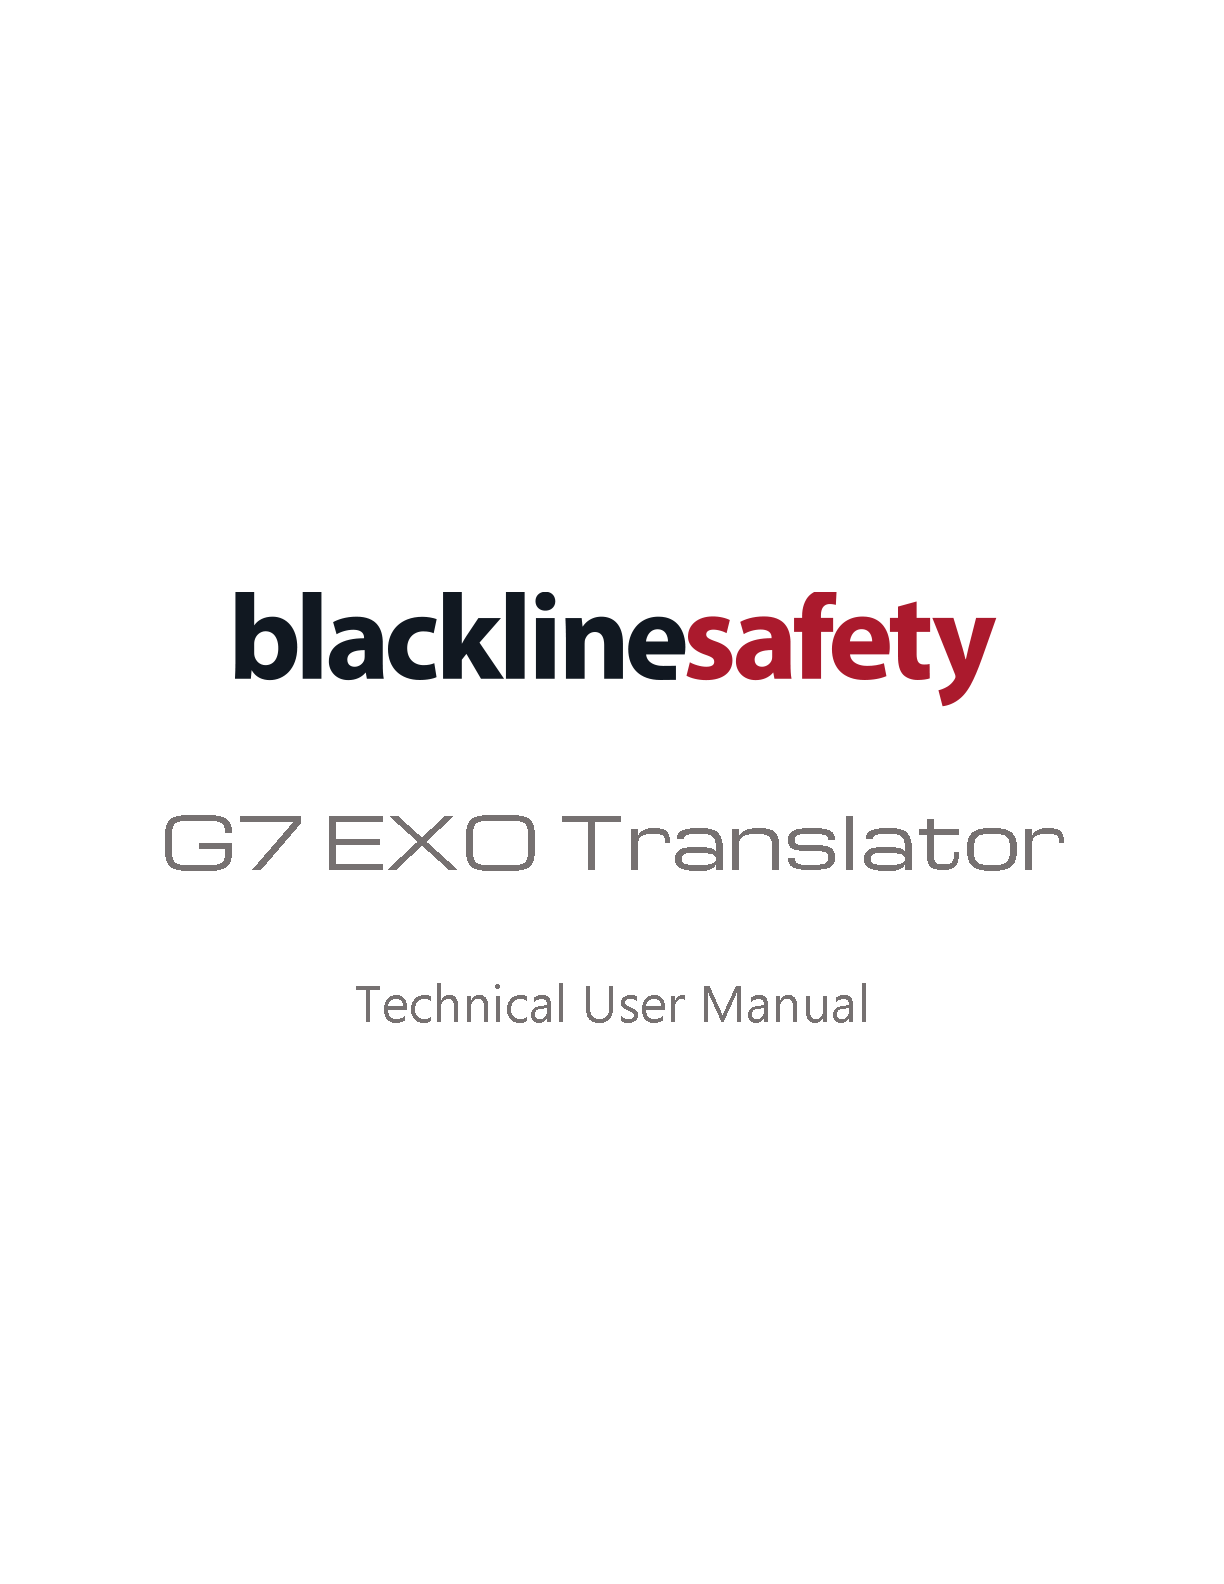 Manuale tecnico d'uso del traduttore G7 EXO Pagina di copertina